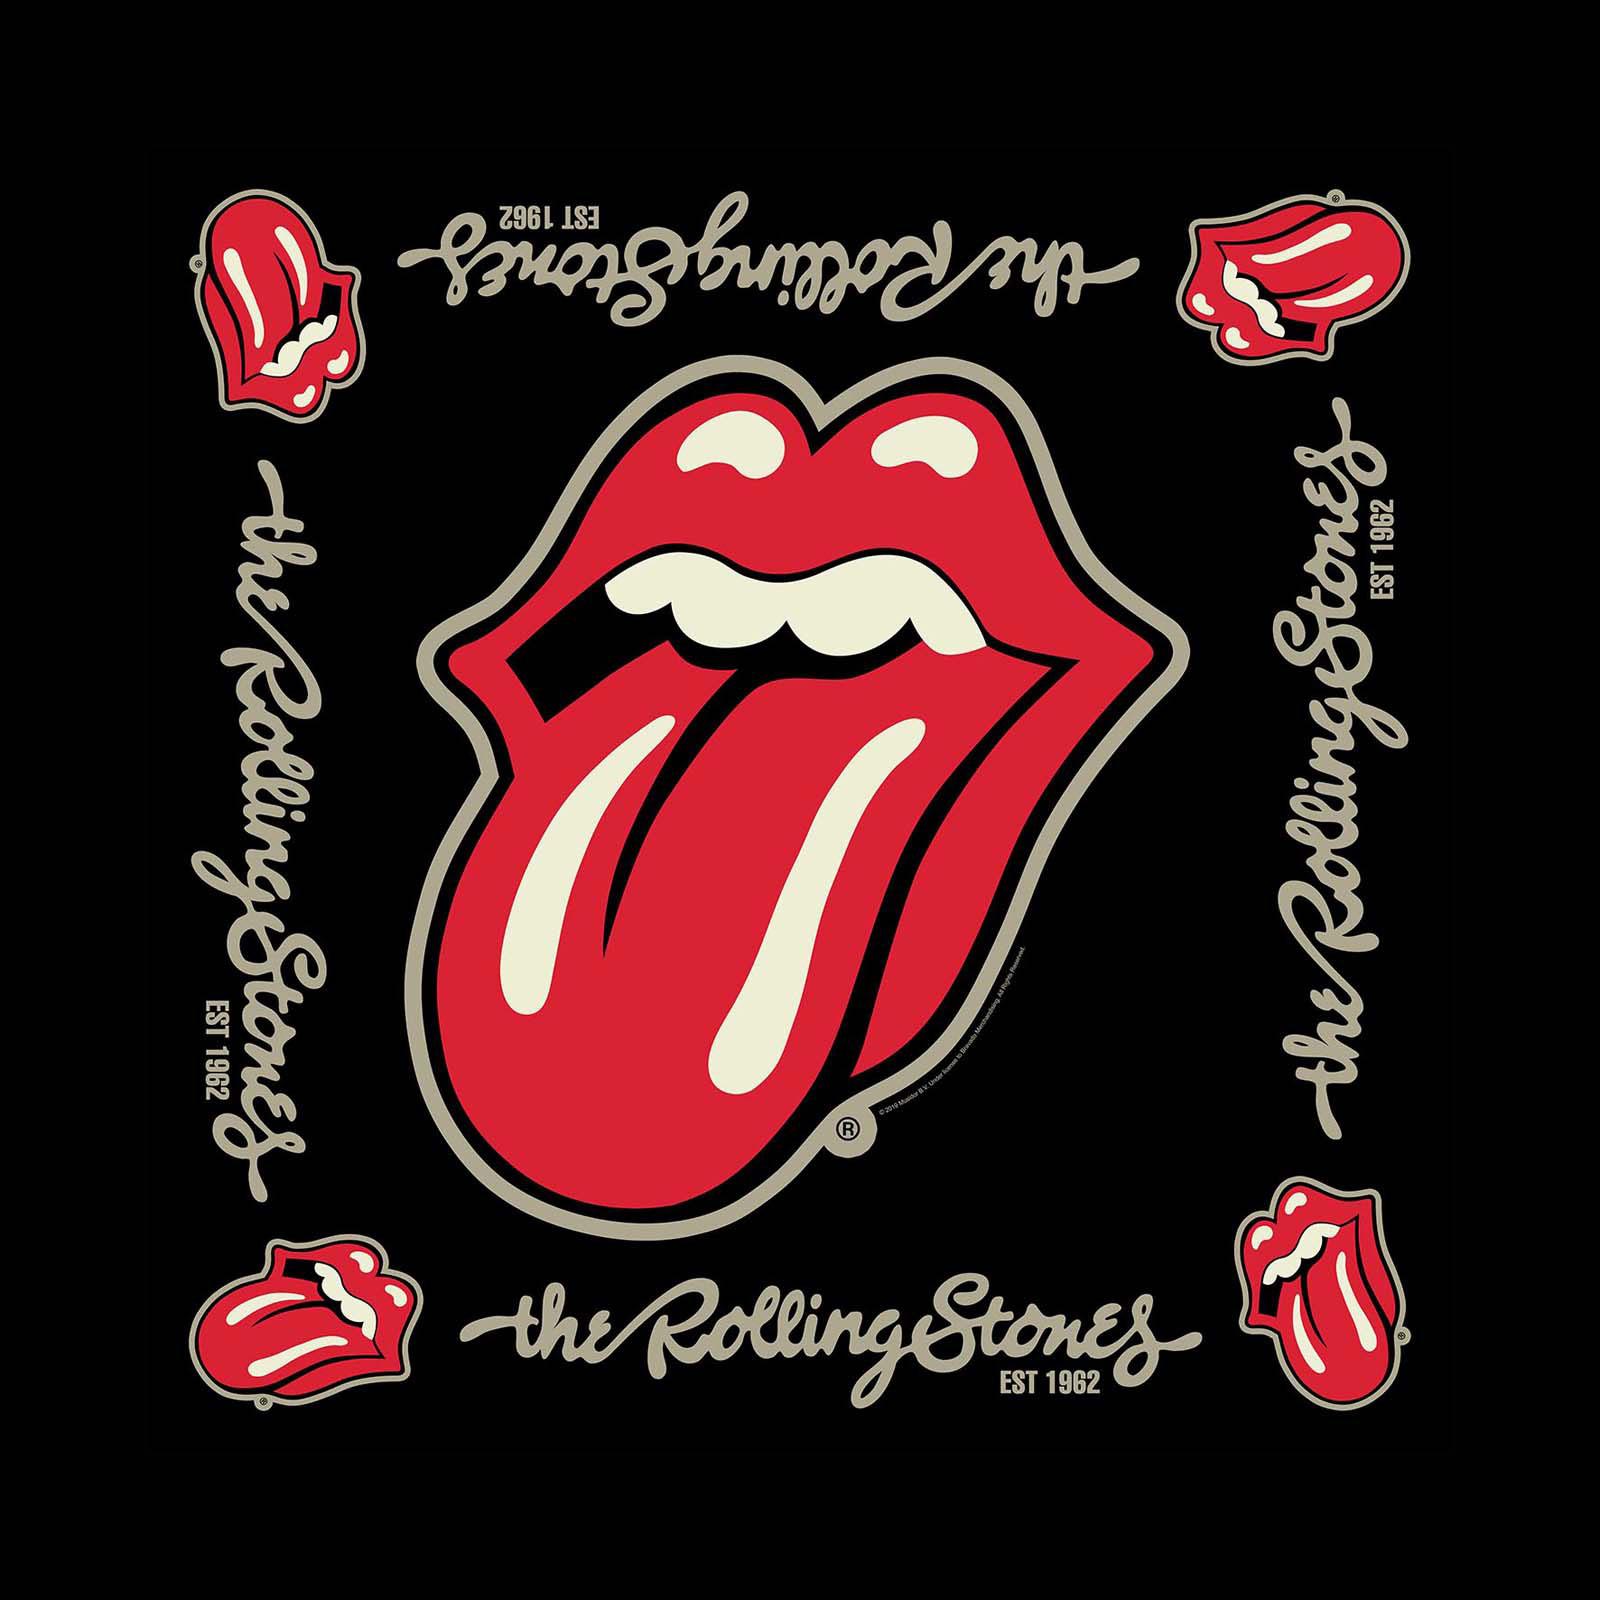 (ローリング・ストーンズ) The Rolling Stones オフィシャル商品 ユニセックス Established 1962 バンダナ スカーフ ハンカチ 【海外通販】